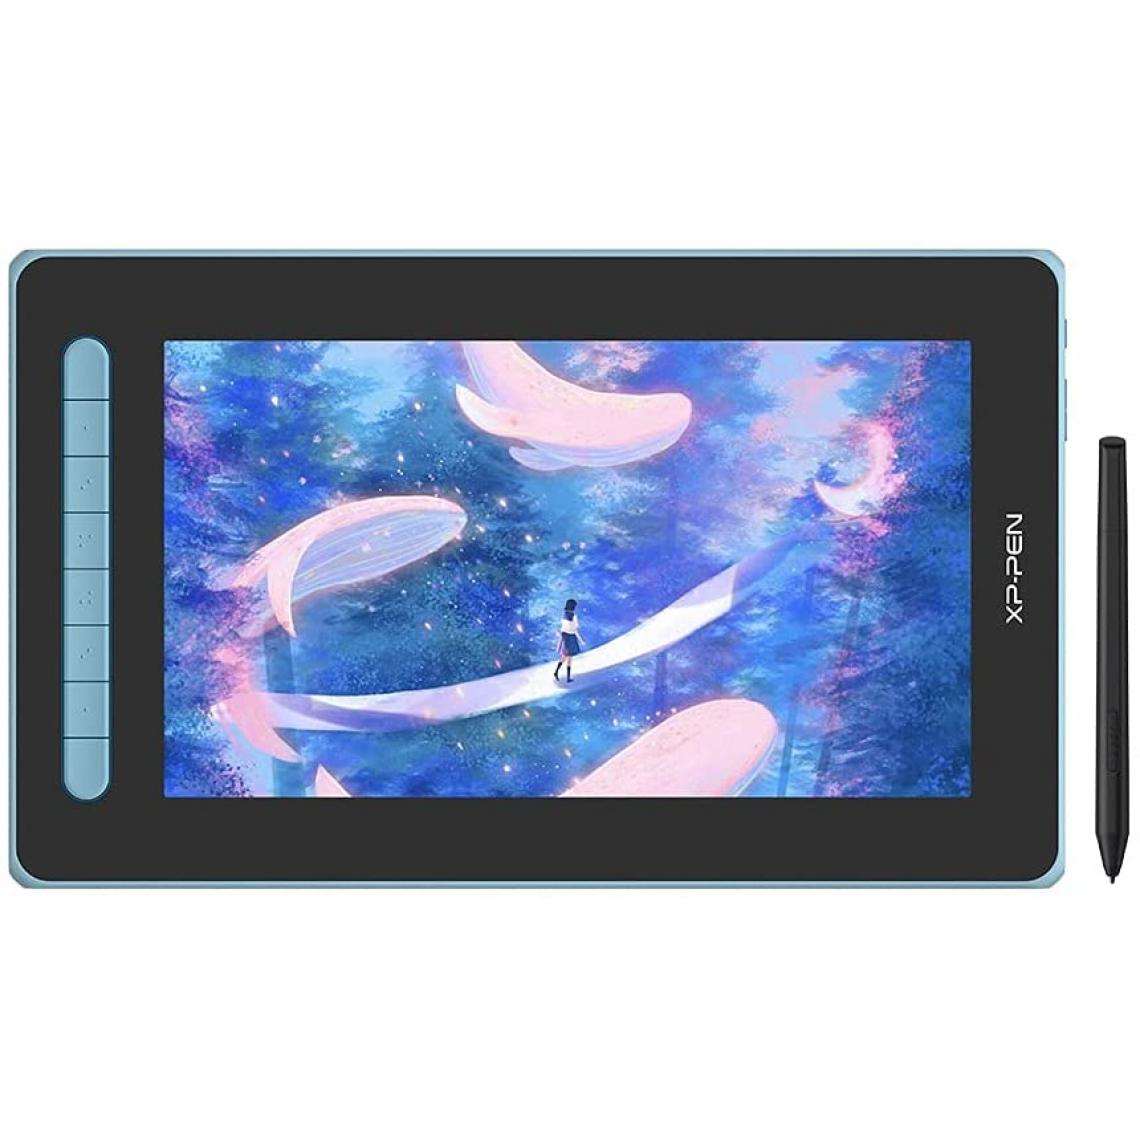 Xp-Pen - XP-PEN Tablette Graphique Artist 12 2nd Generation 127% sRGB Stylet X3 avec Deux Ports Flexibles Compatible avec Android Chrombook Linux - Bleu - Tablette Graphique